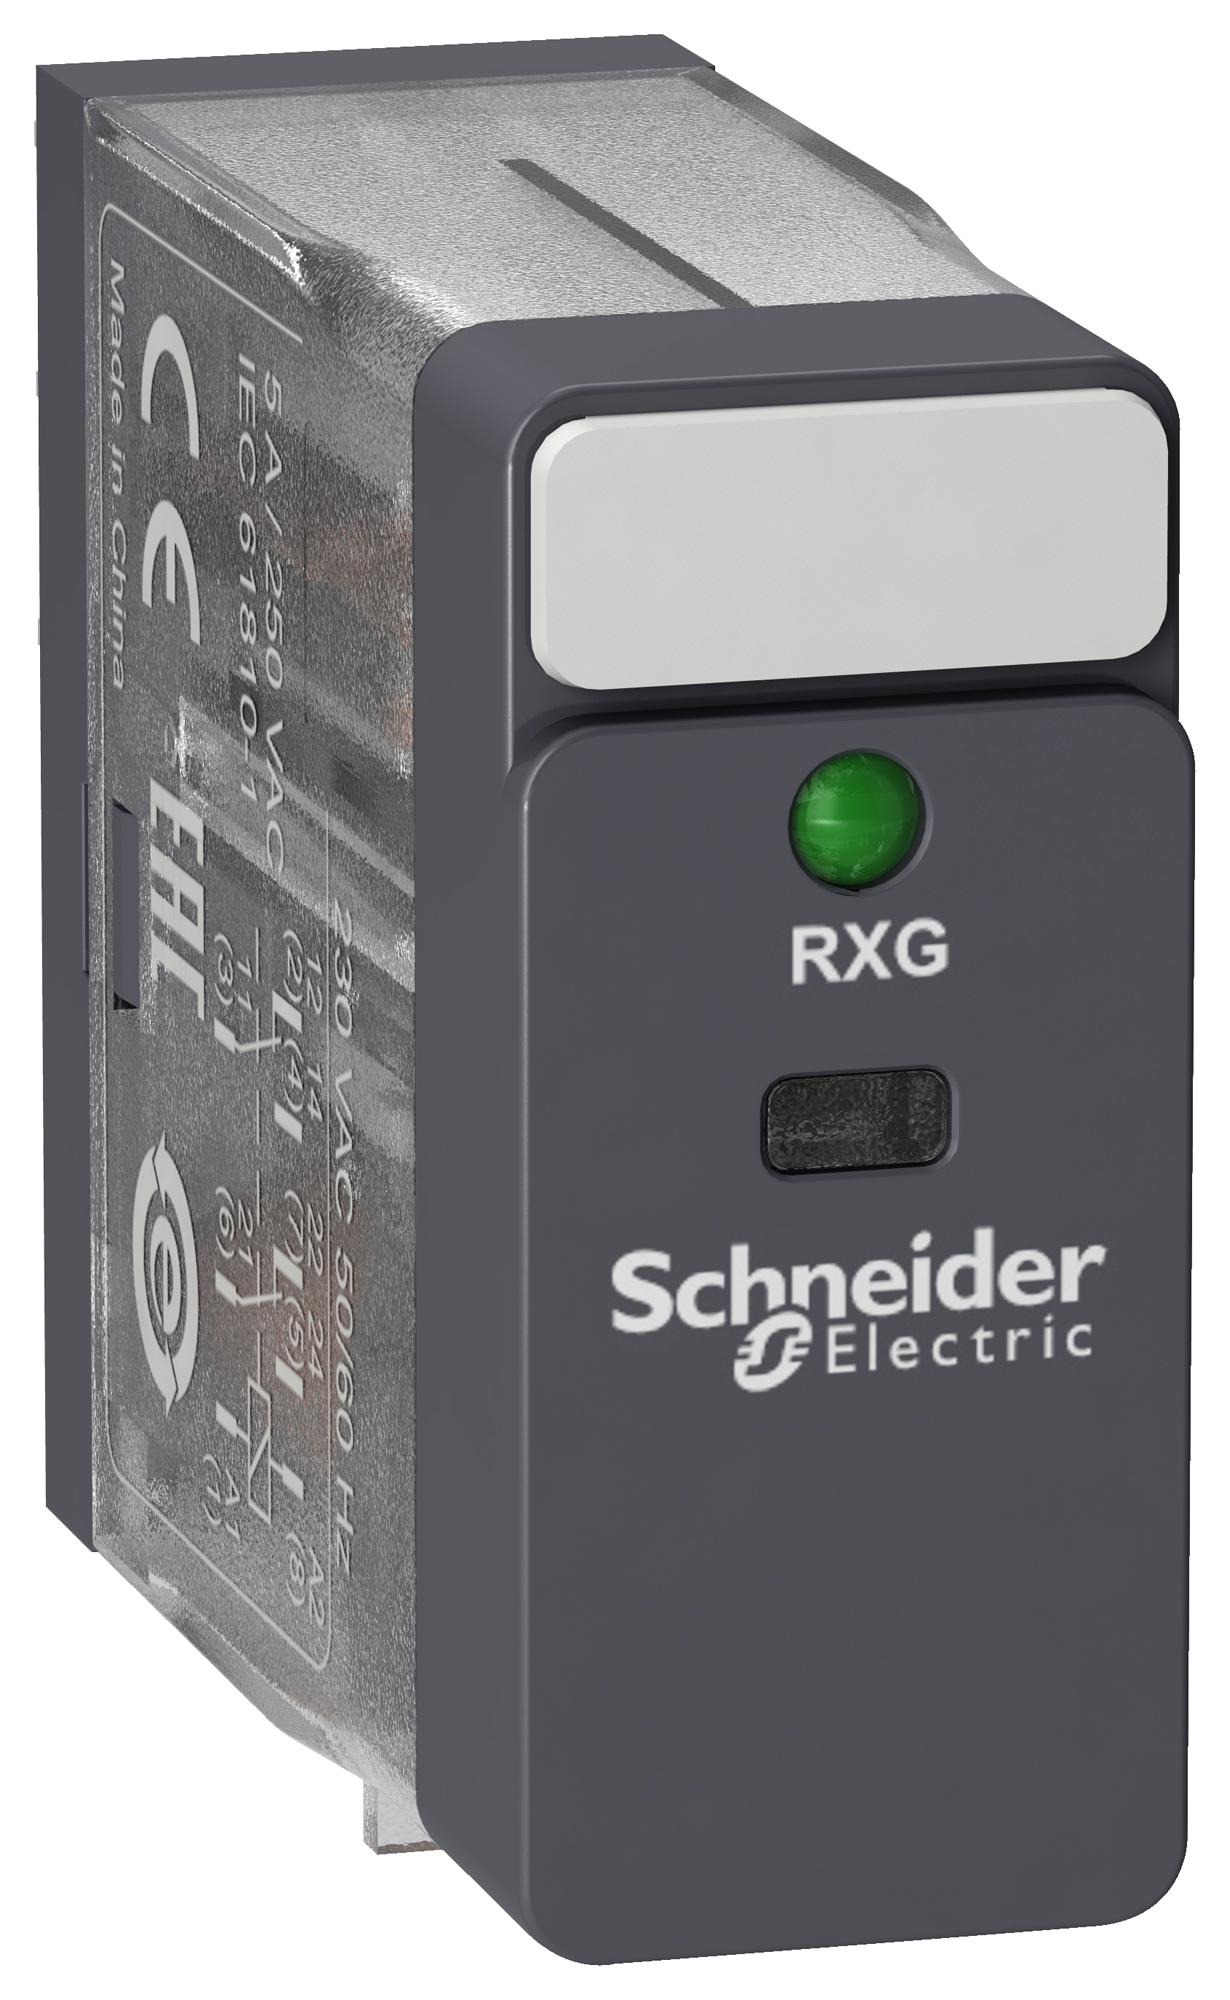 RXG23E7 POWER RELAY, DPDT, 5A, 250VAC SCHNEIDER ELECTRIC